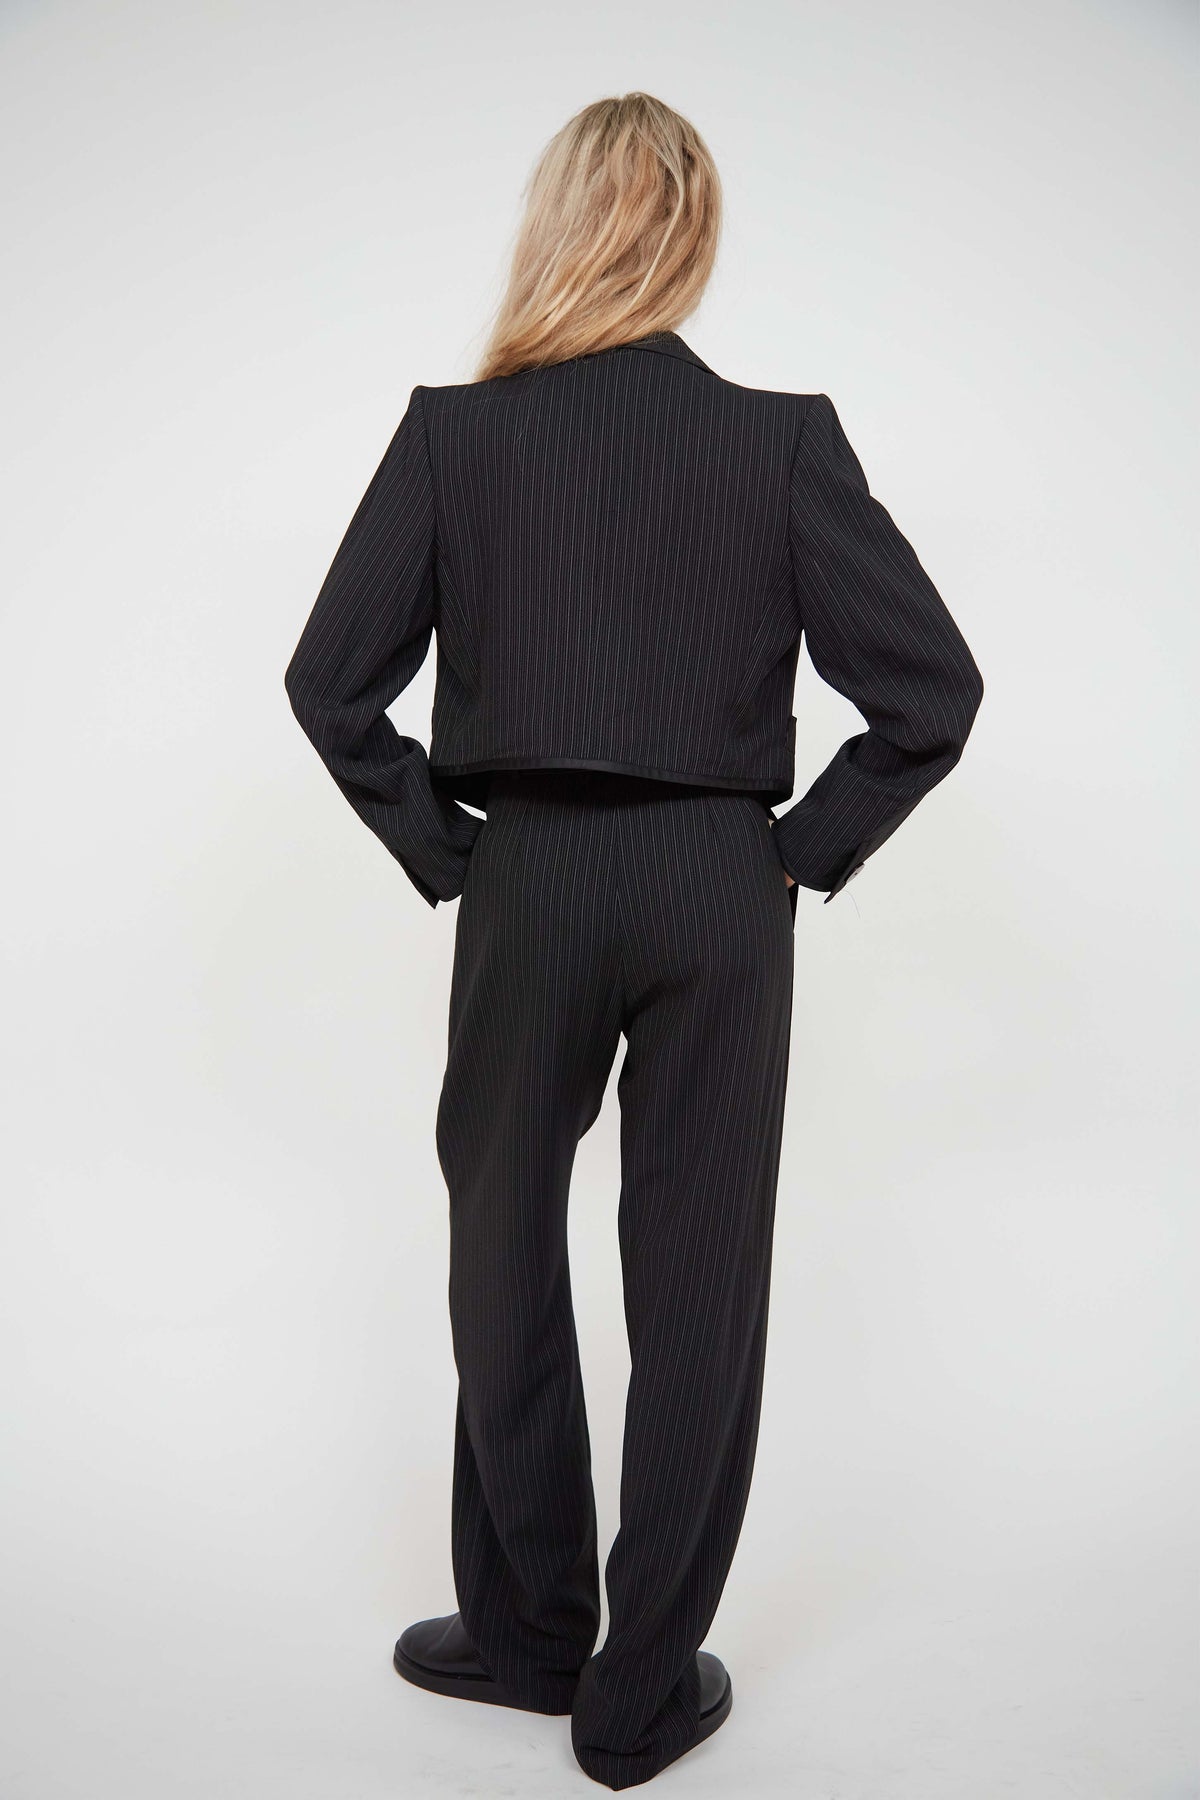 Yves Saint Laurent suit